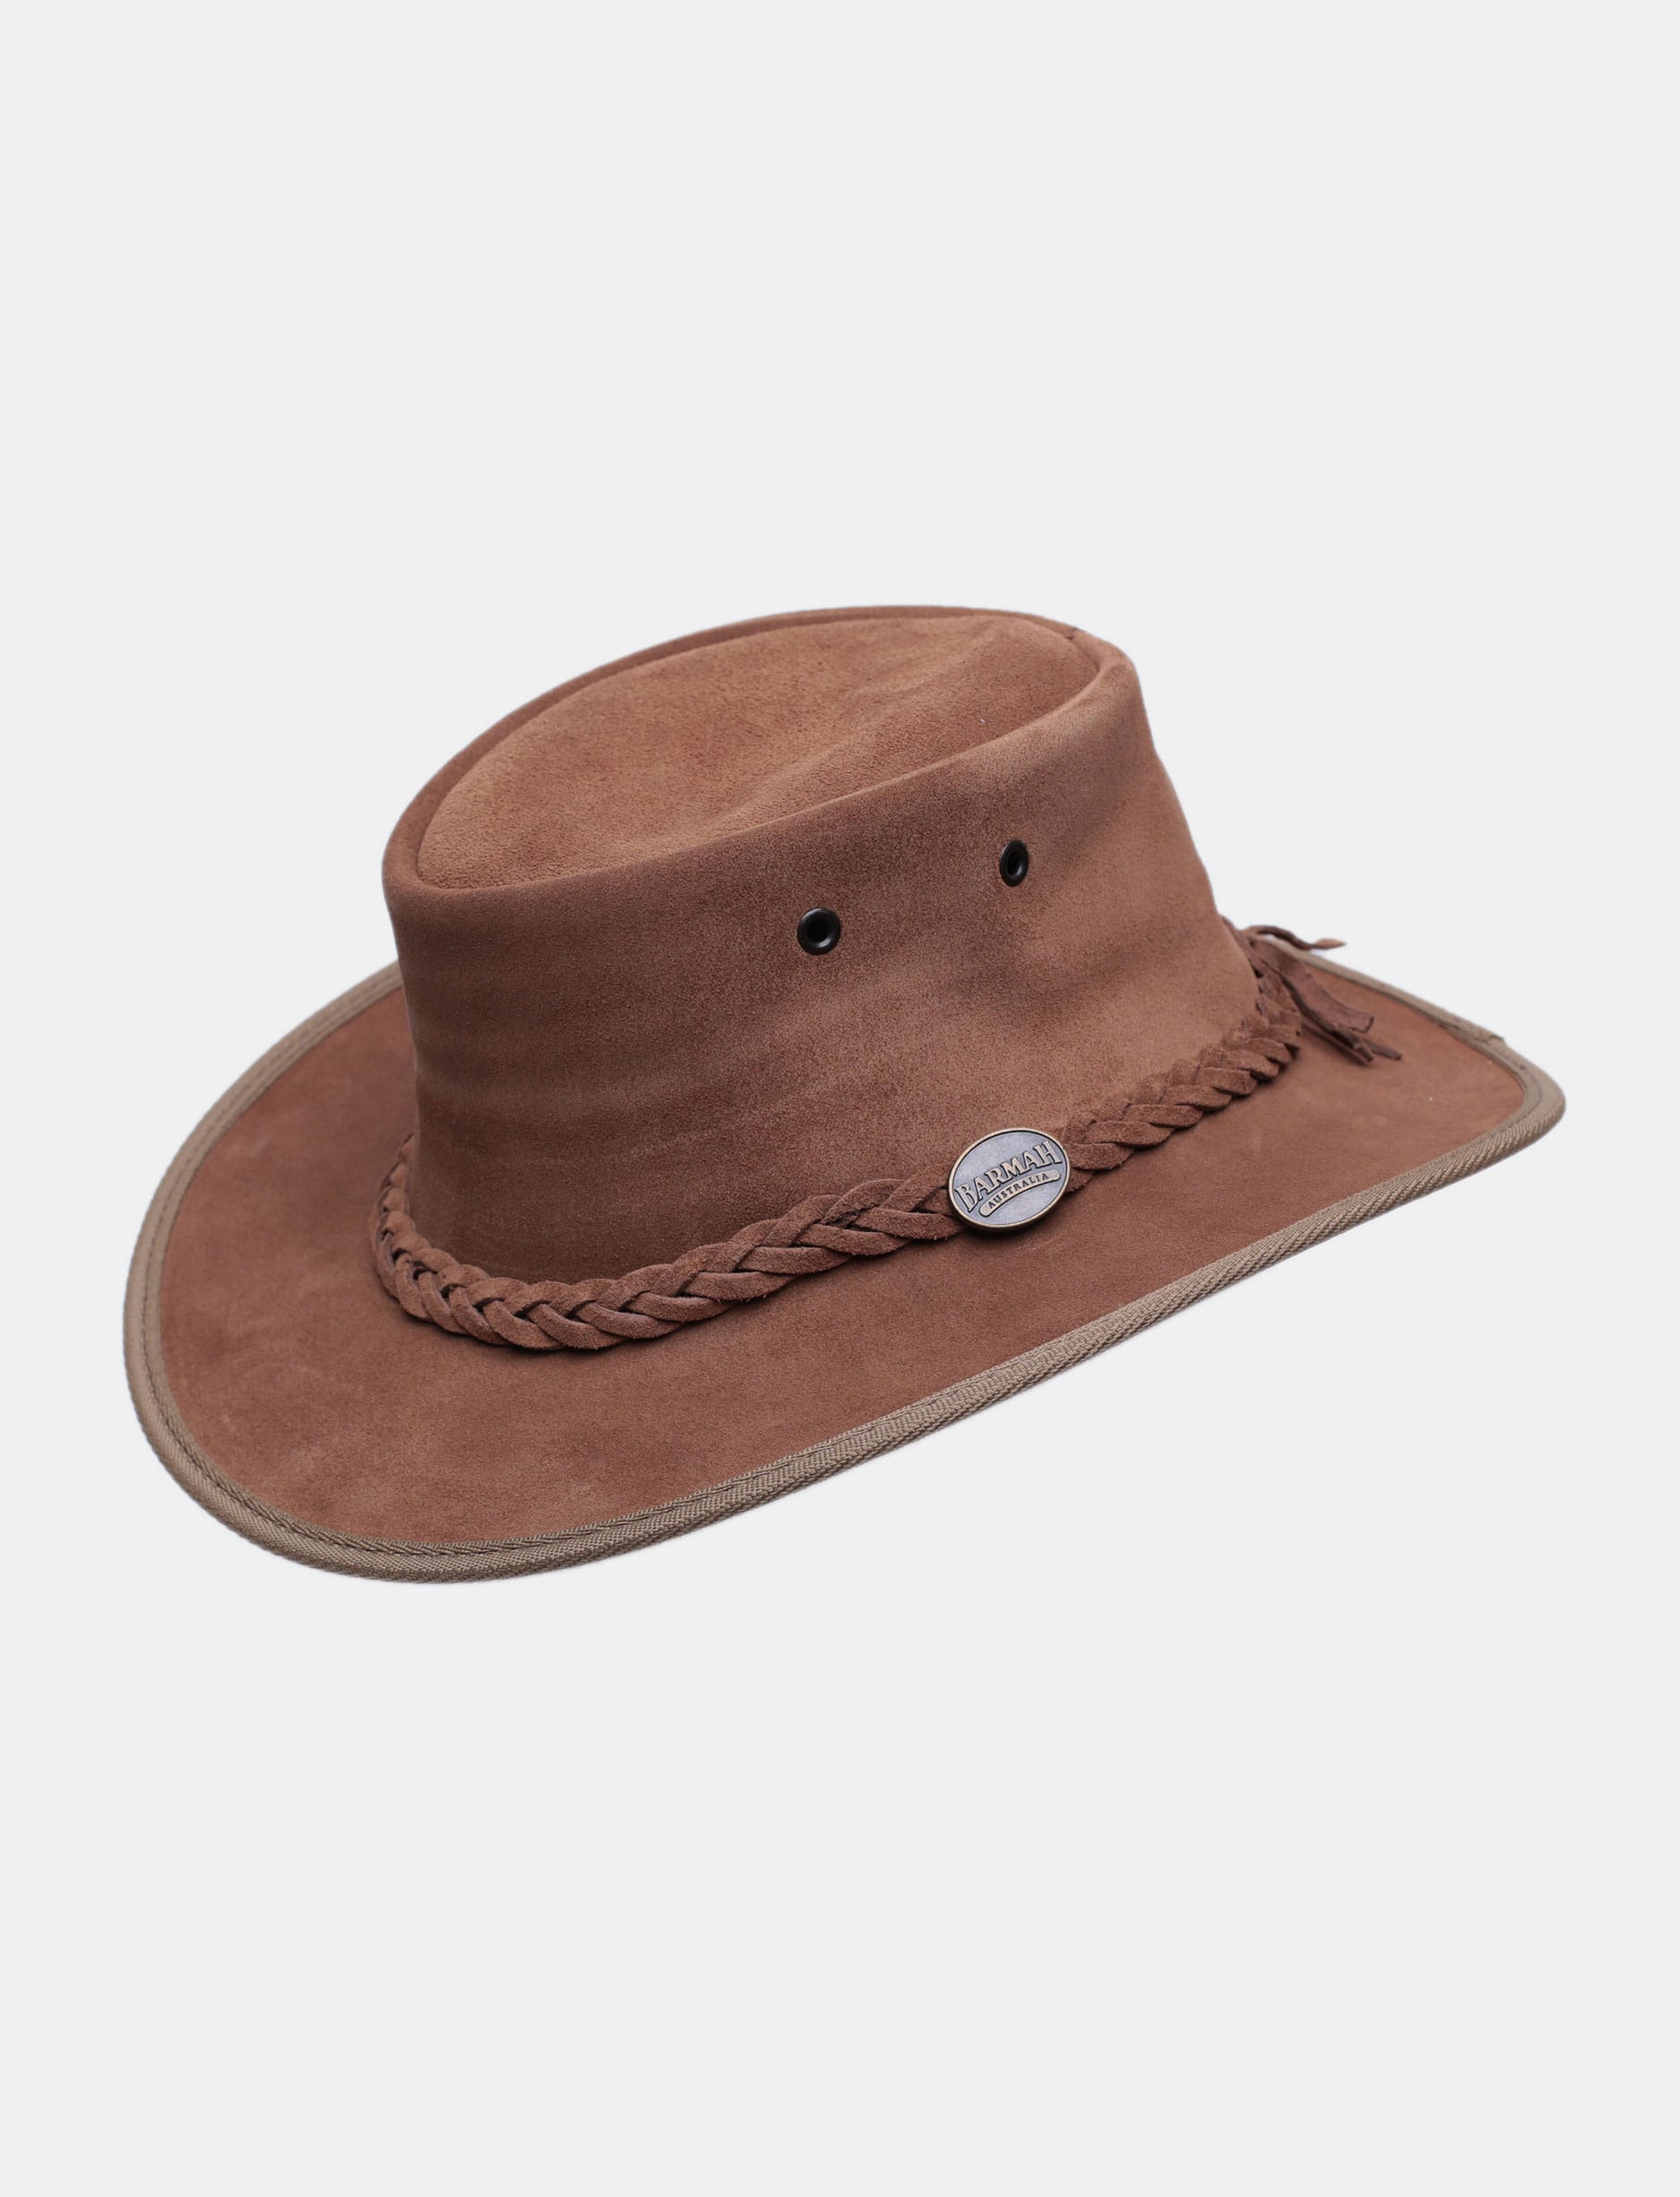 Barmah HI 1061 - כובע בוקרים רחב שוליים ברמה מזמש